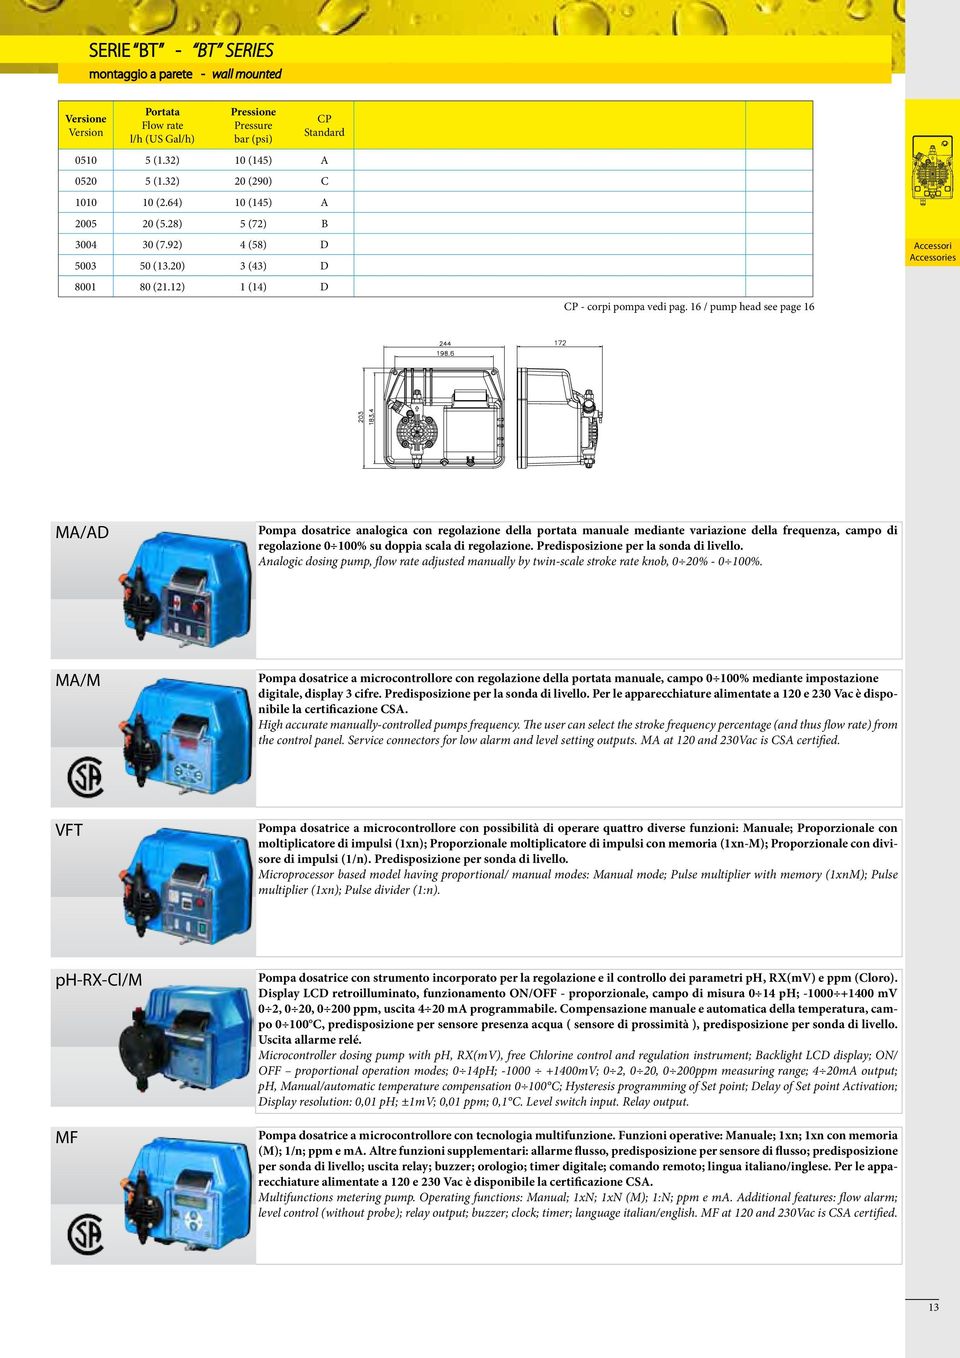 16 / pump head see page 16 MA/AD Pompa dosatrice analogica con regolazione della portata manuale mediante variazione della frequenza, campo di regolazione 1% su doppia scala di regolazione.